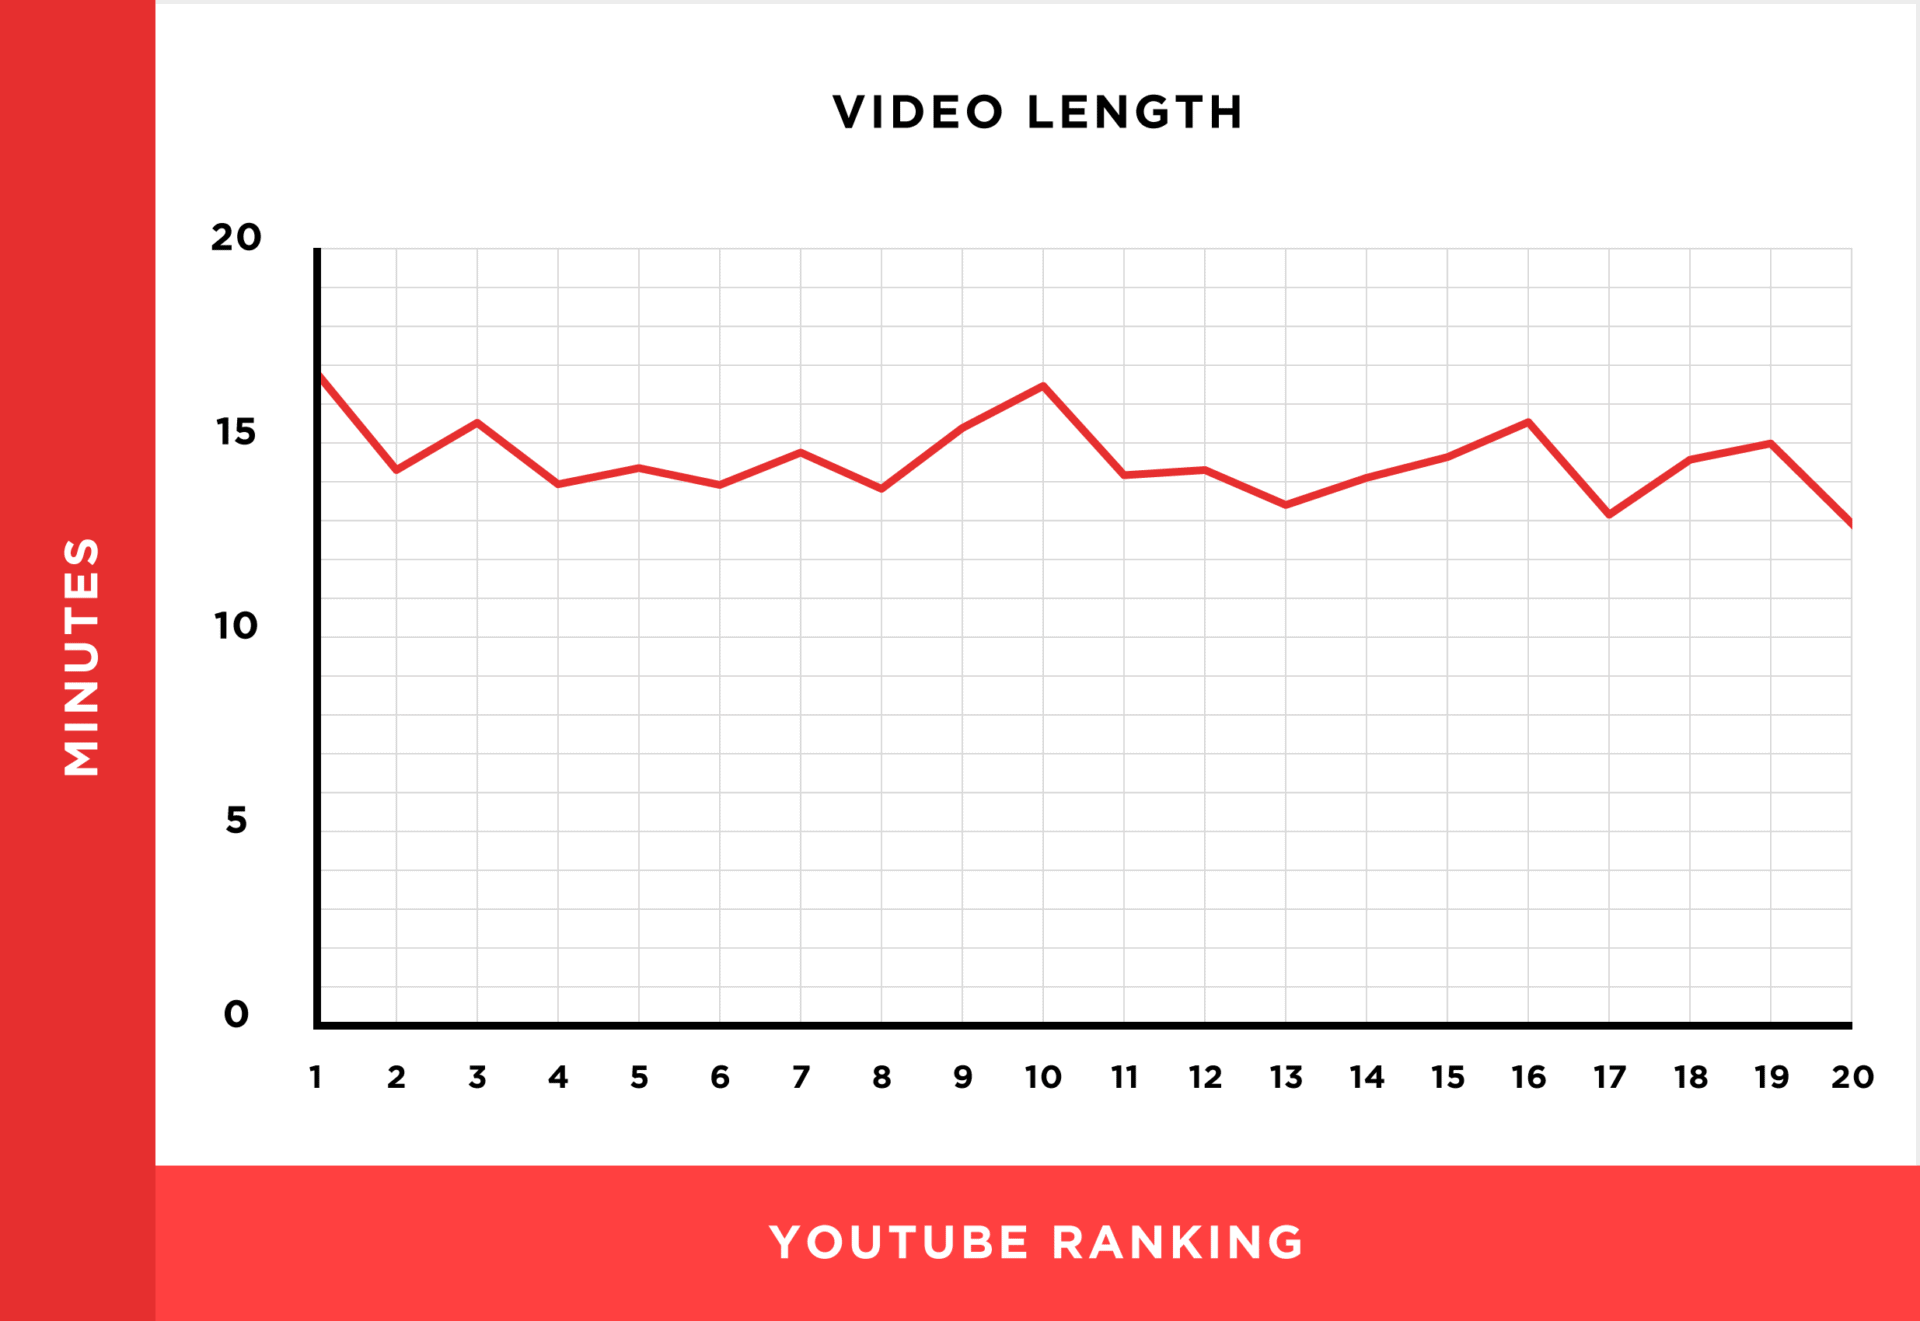 動画の長さと検索ランキングの相関関係